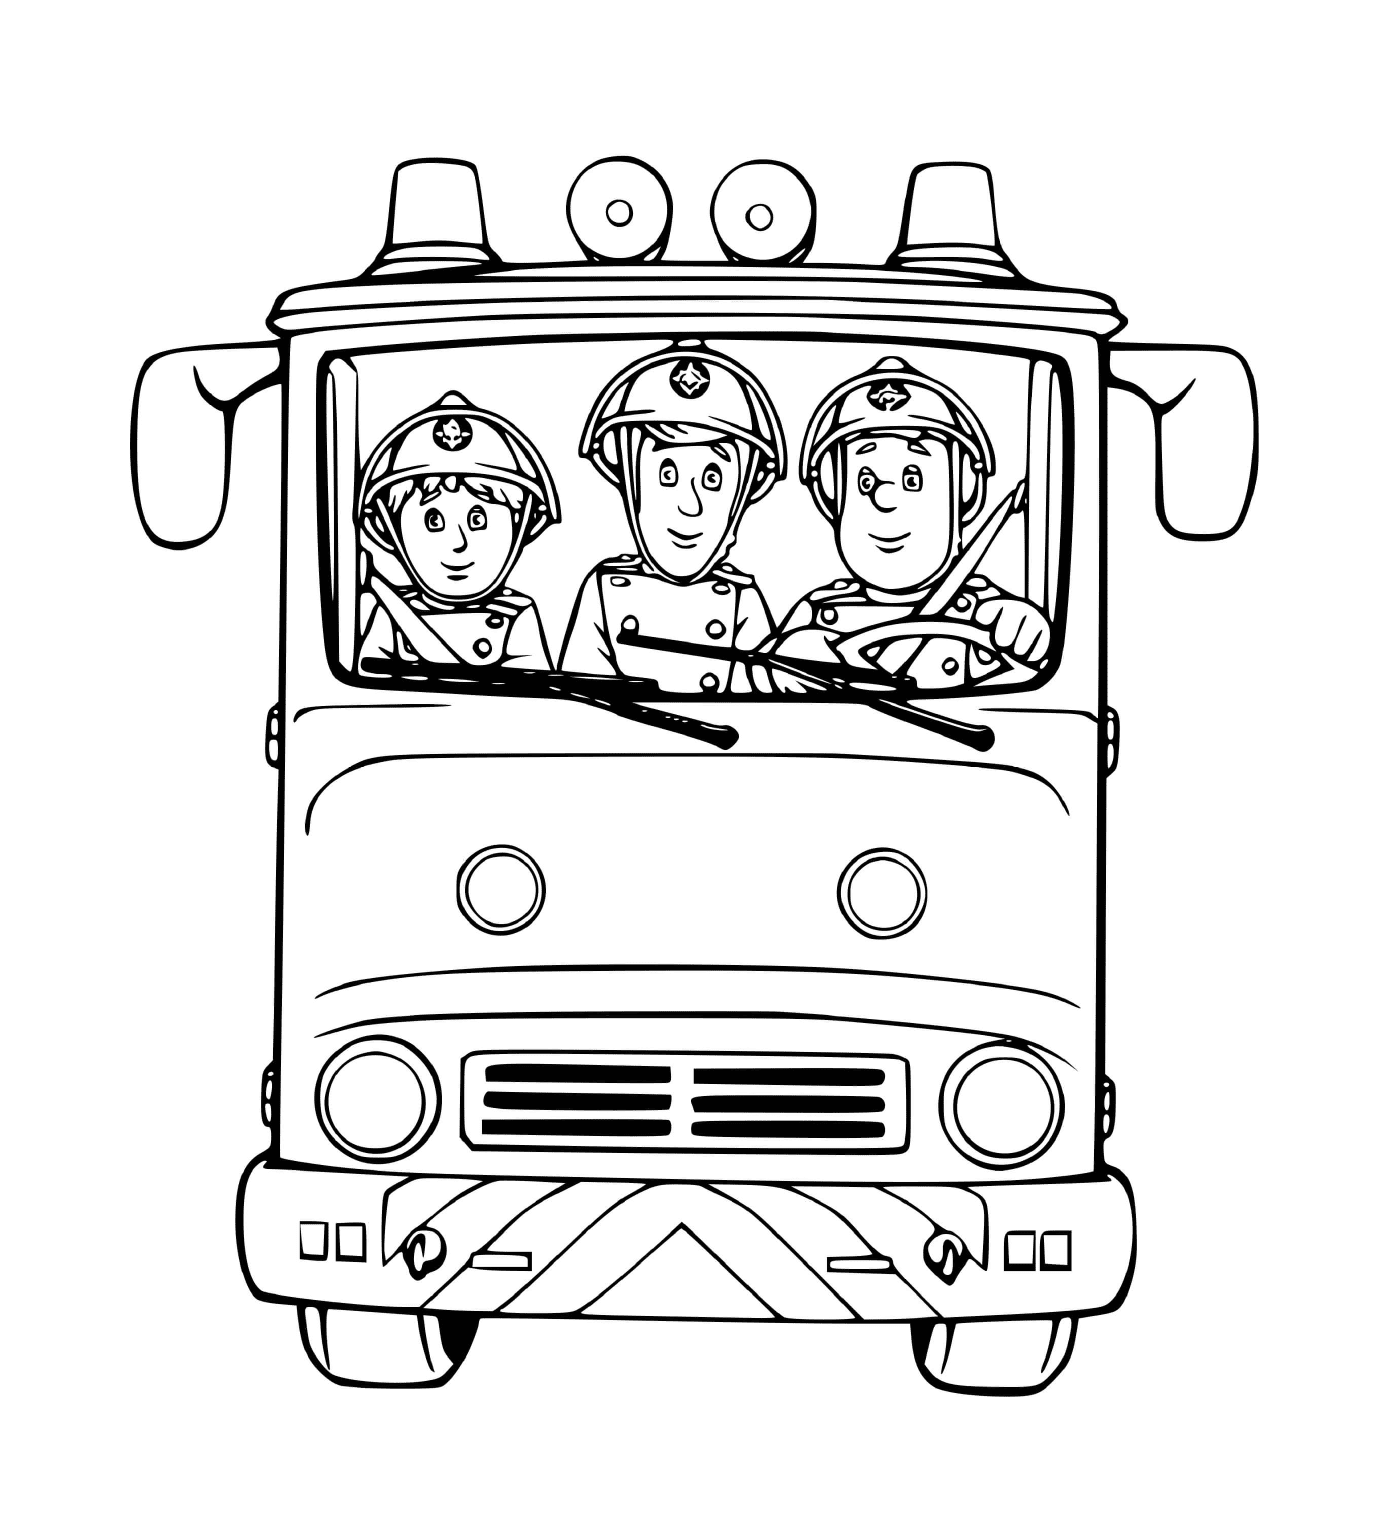  شاحنة إطفاء، ثلاثة إطفائيين جاهزين 